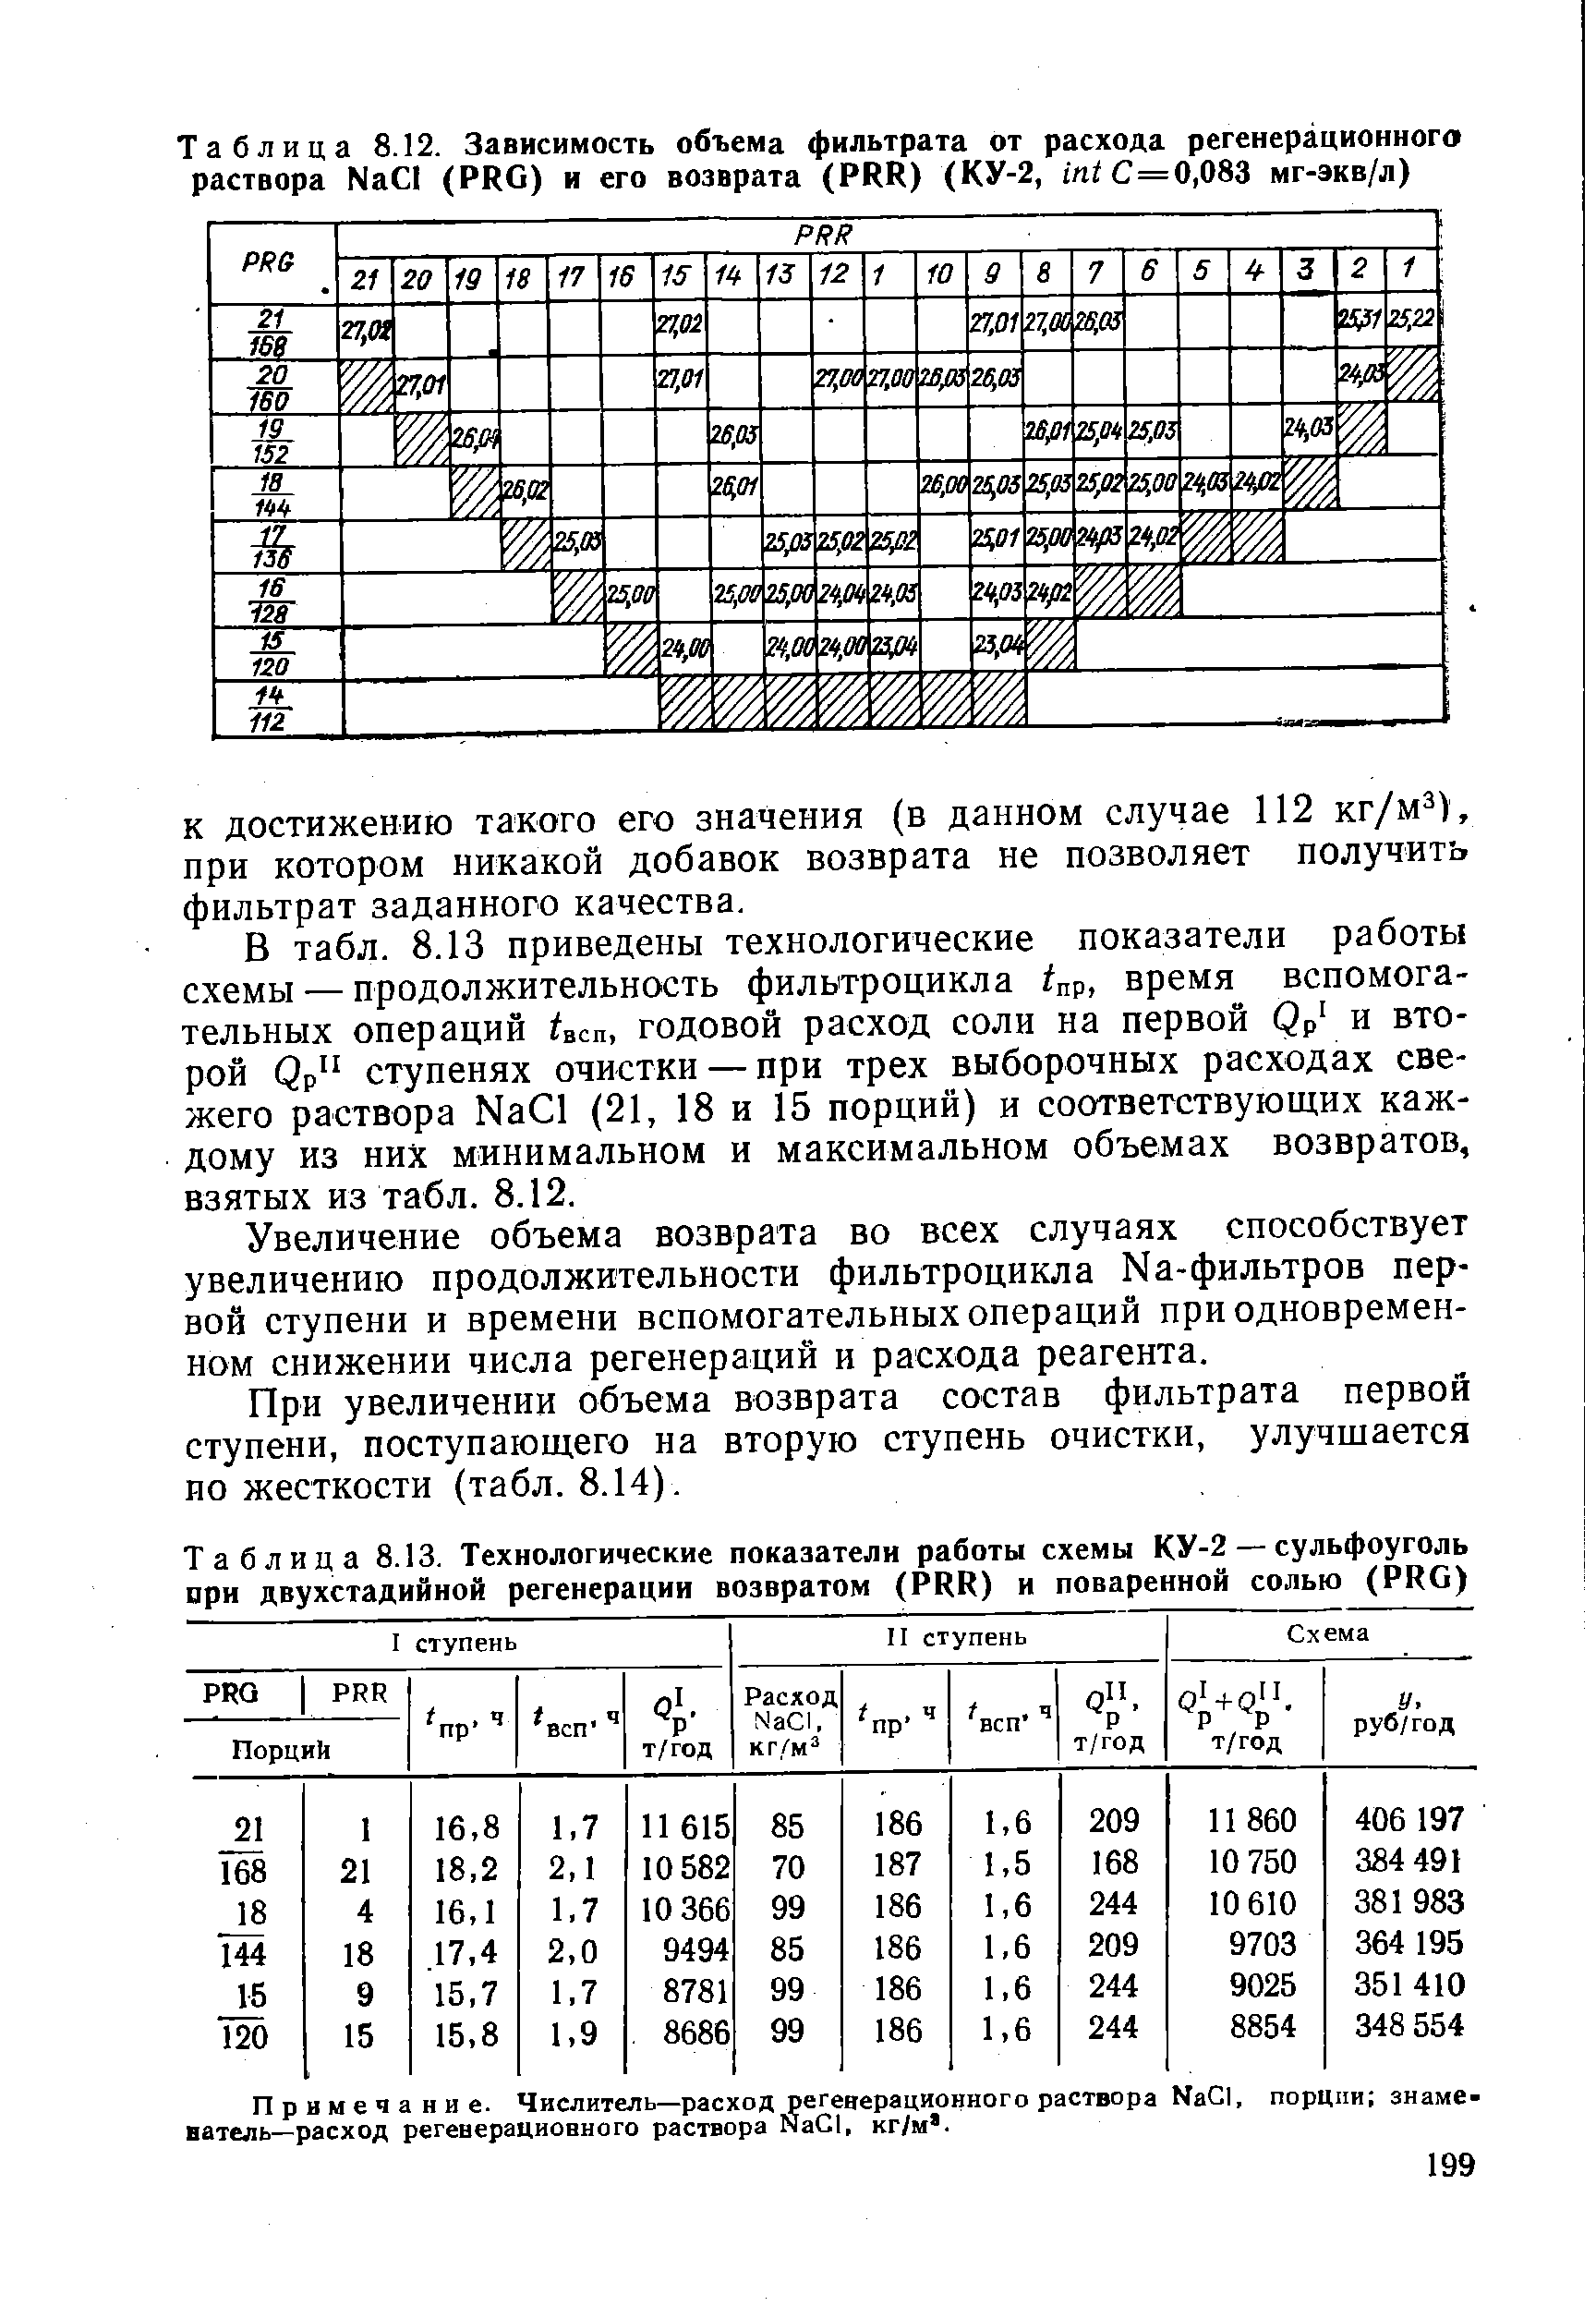 Таблица 8.13. Технологические показатели работы схемы КУ-2 — сульфоуголь при двухстадийиой регенерации возвратом (PRR) и поваренной солью (PRG)
